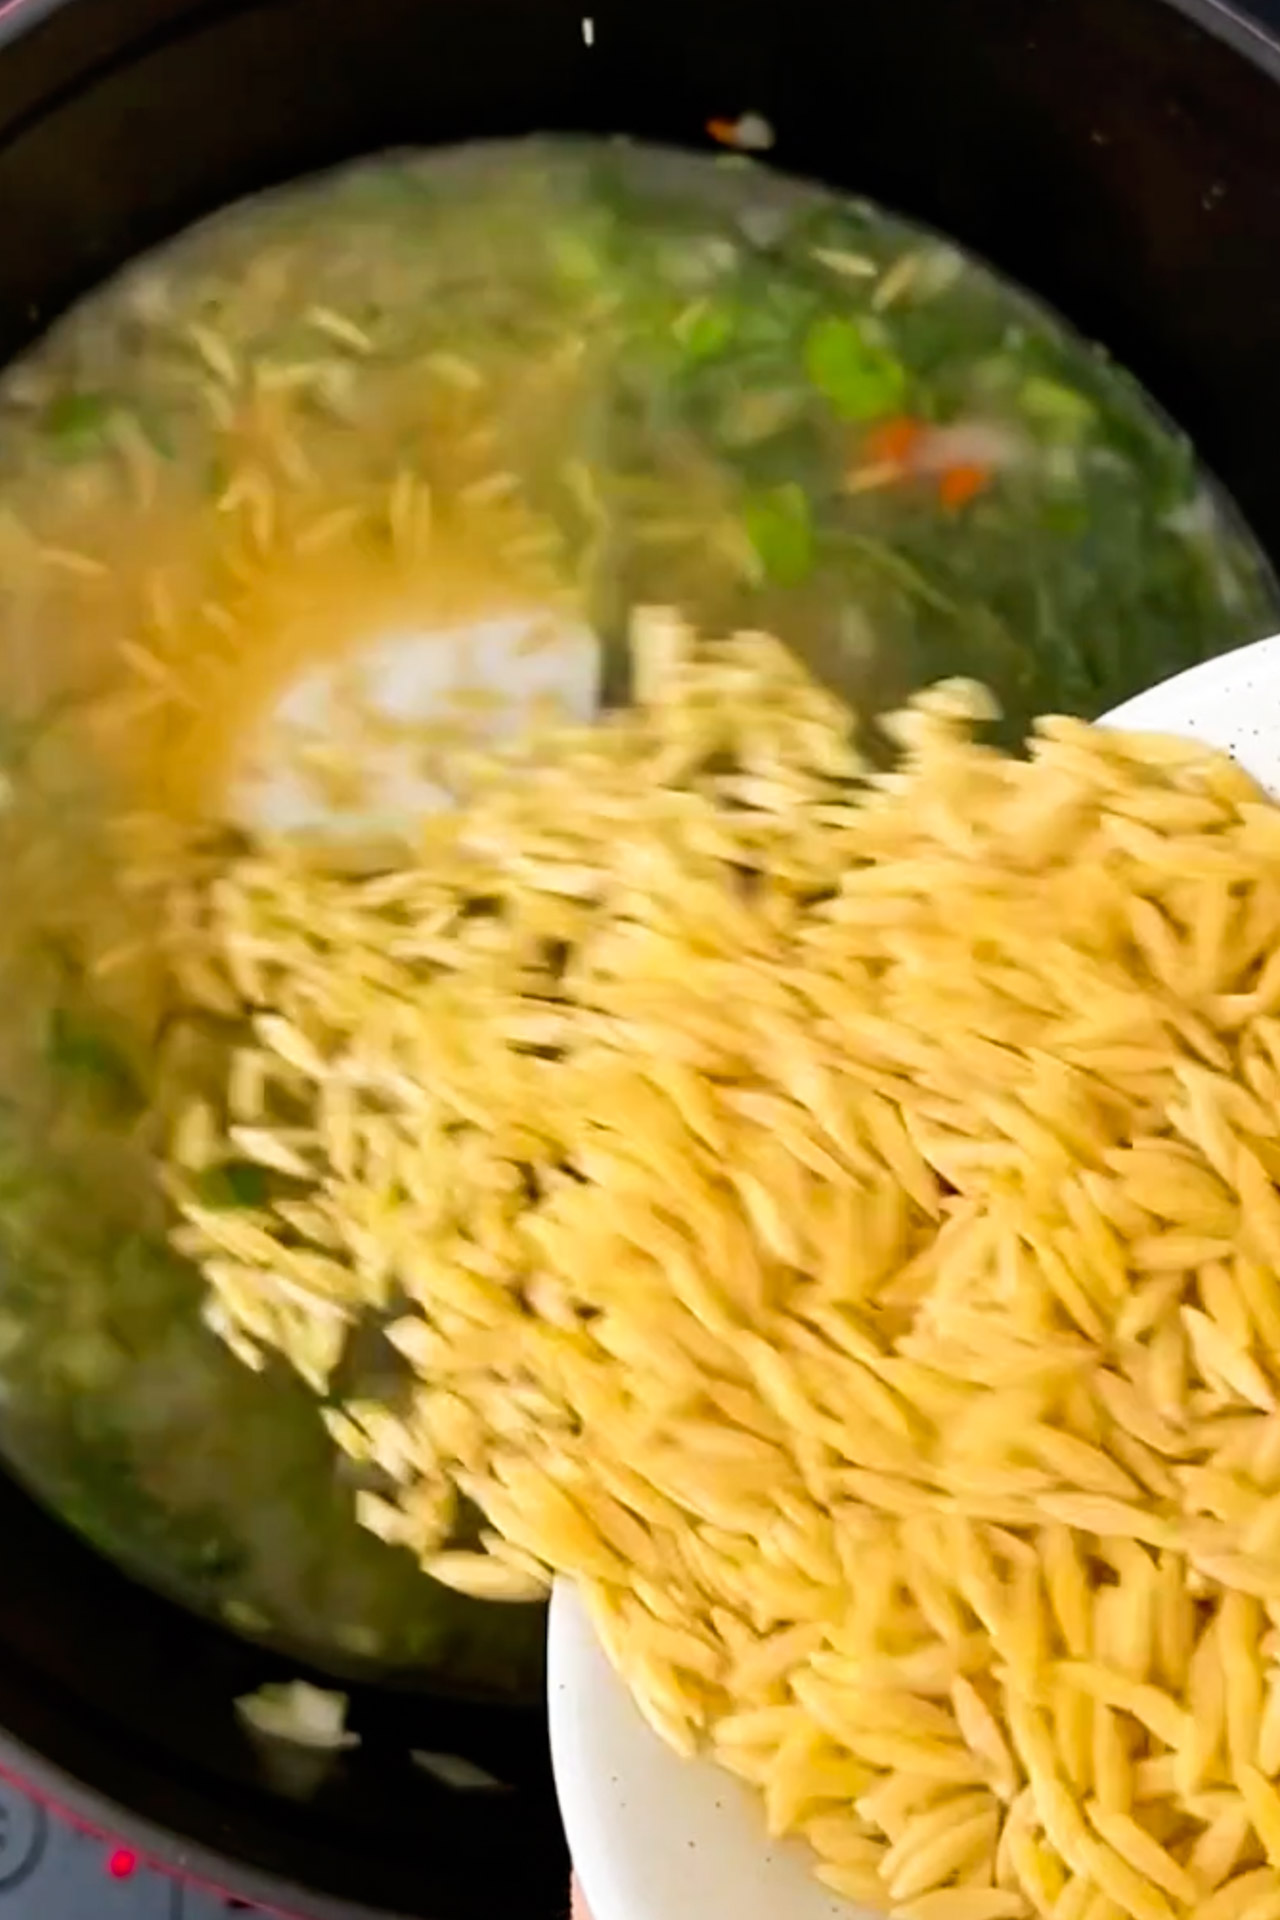 A vegan is pouring noodles into a pot of soup.